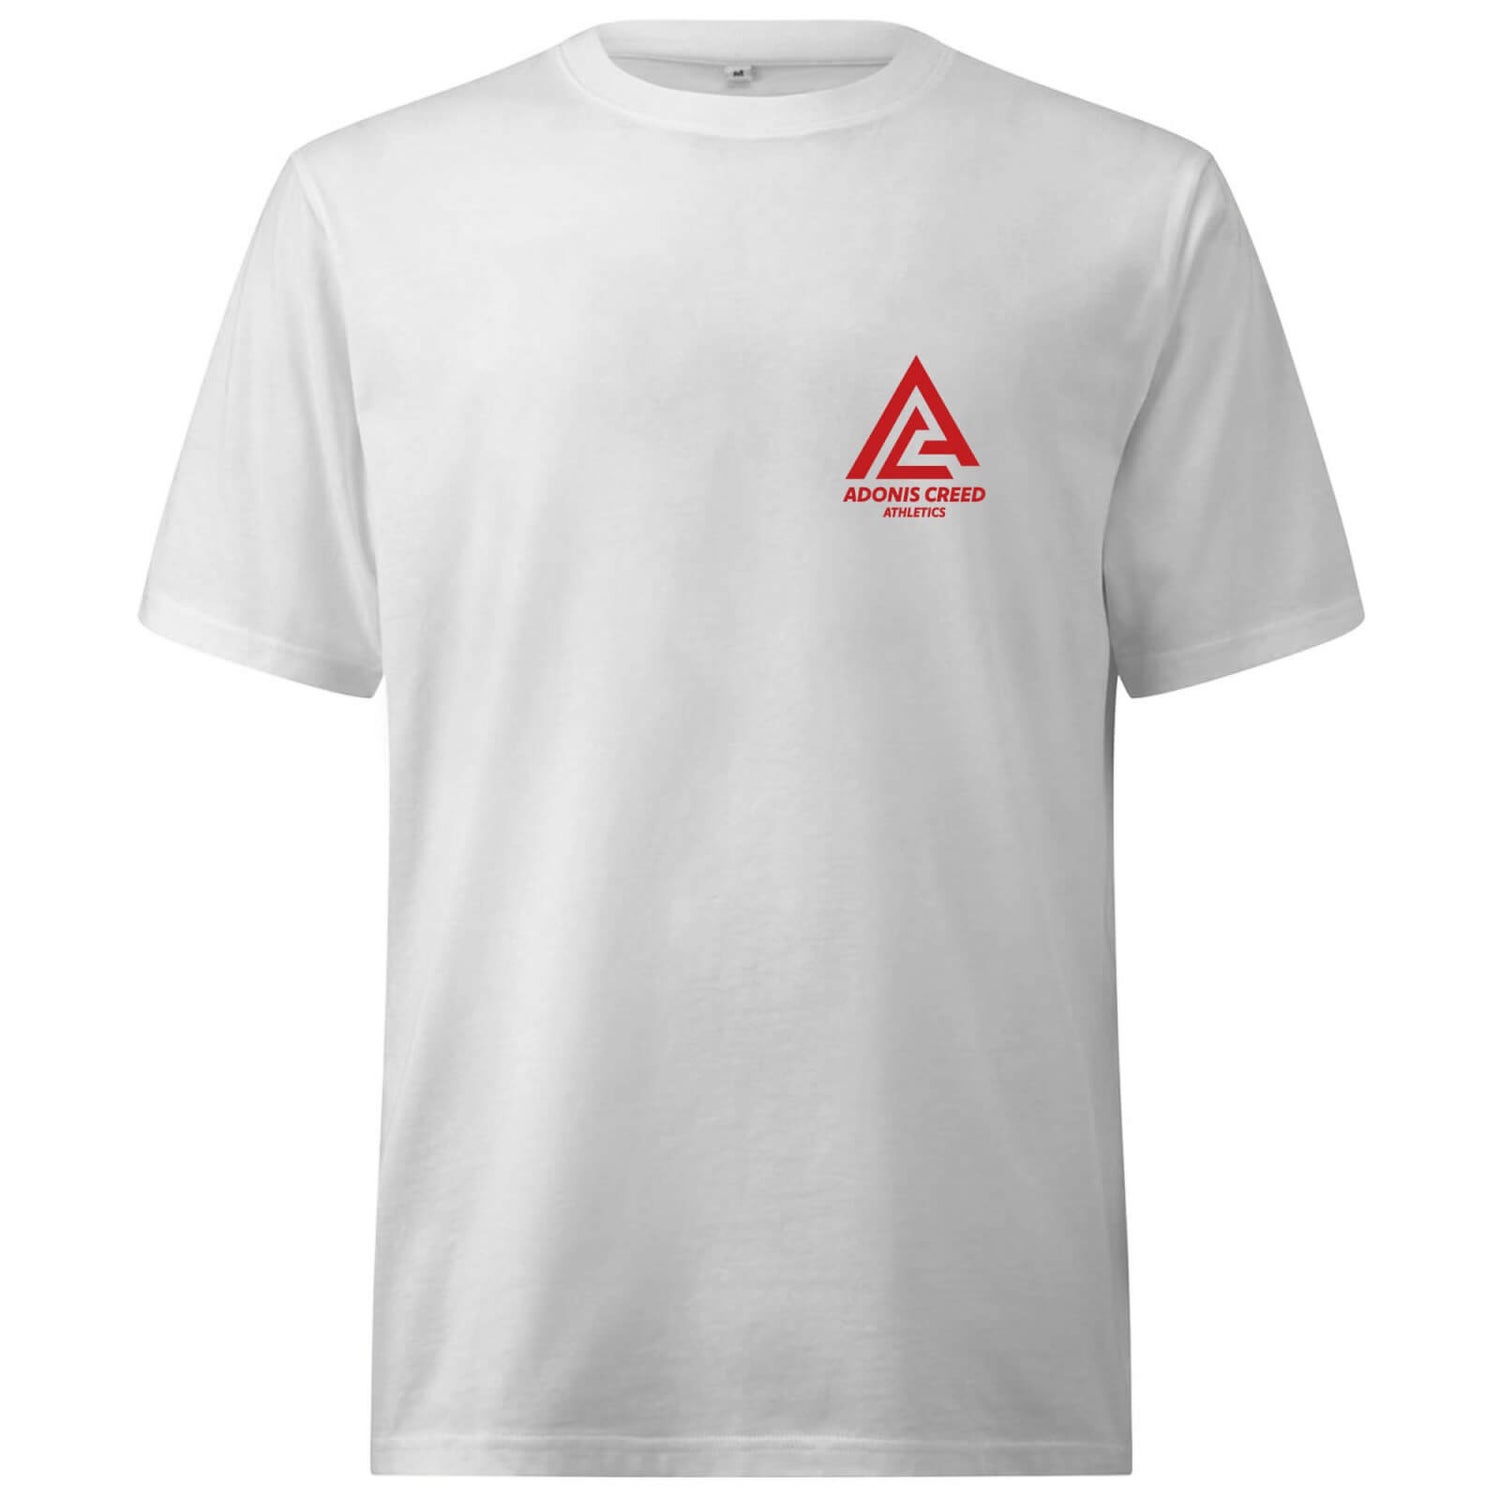 Creed Adonis Creed Athletics Logo Oversized Heavyweight T-Shirt - White - XS